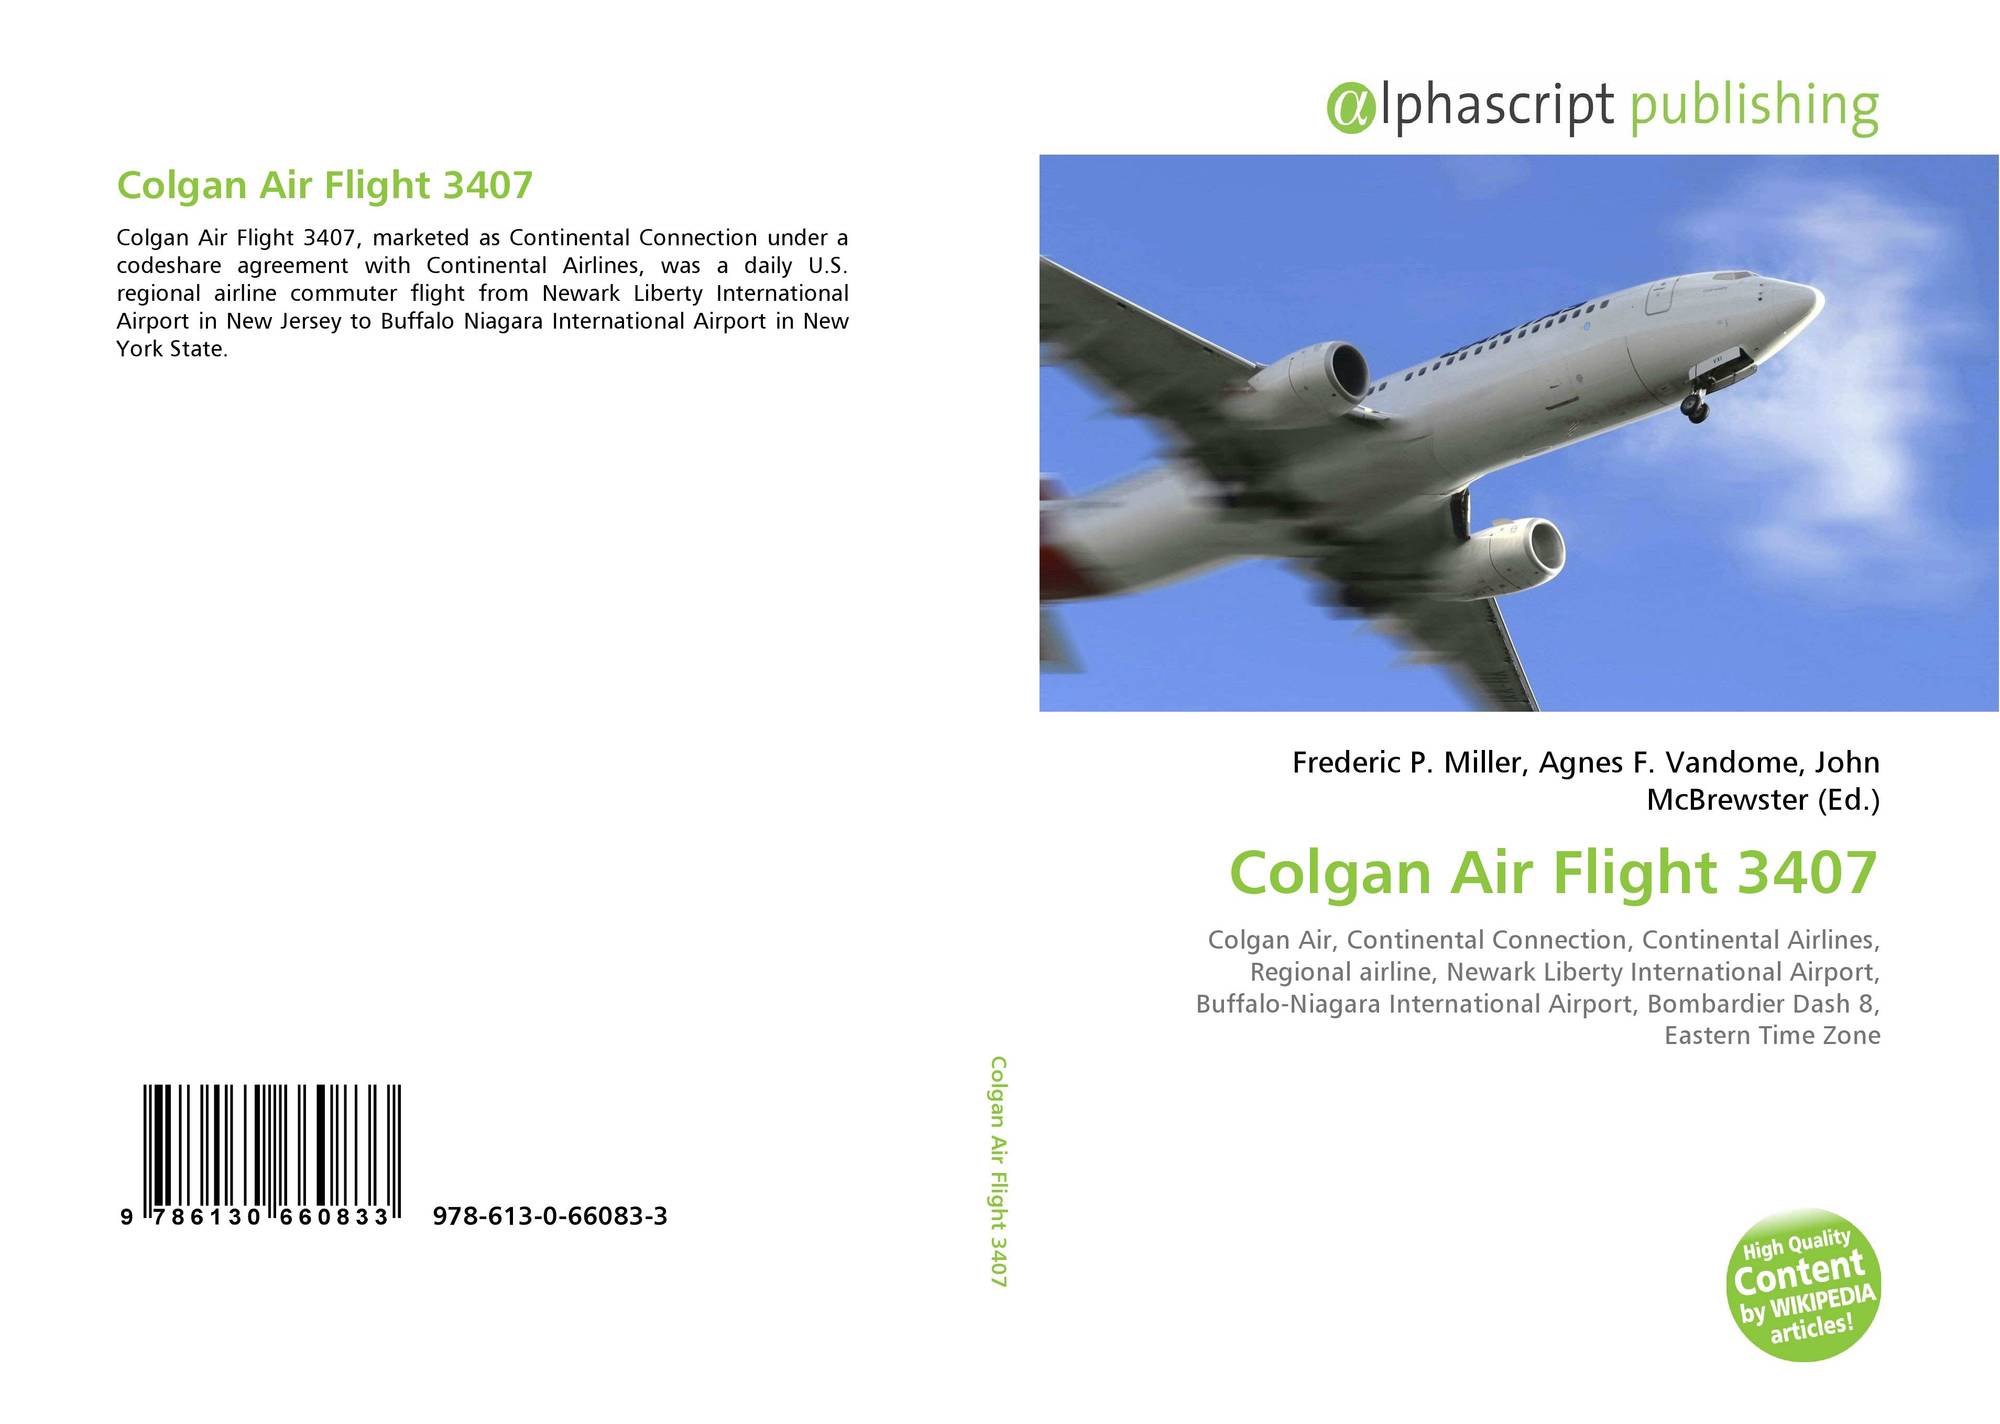 Colgan Air Flight 3407 978 613 0 66083 3 6130660839 9786130660833